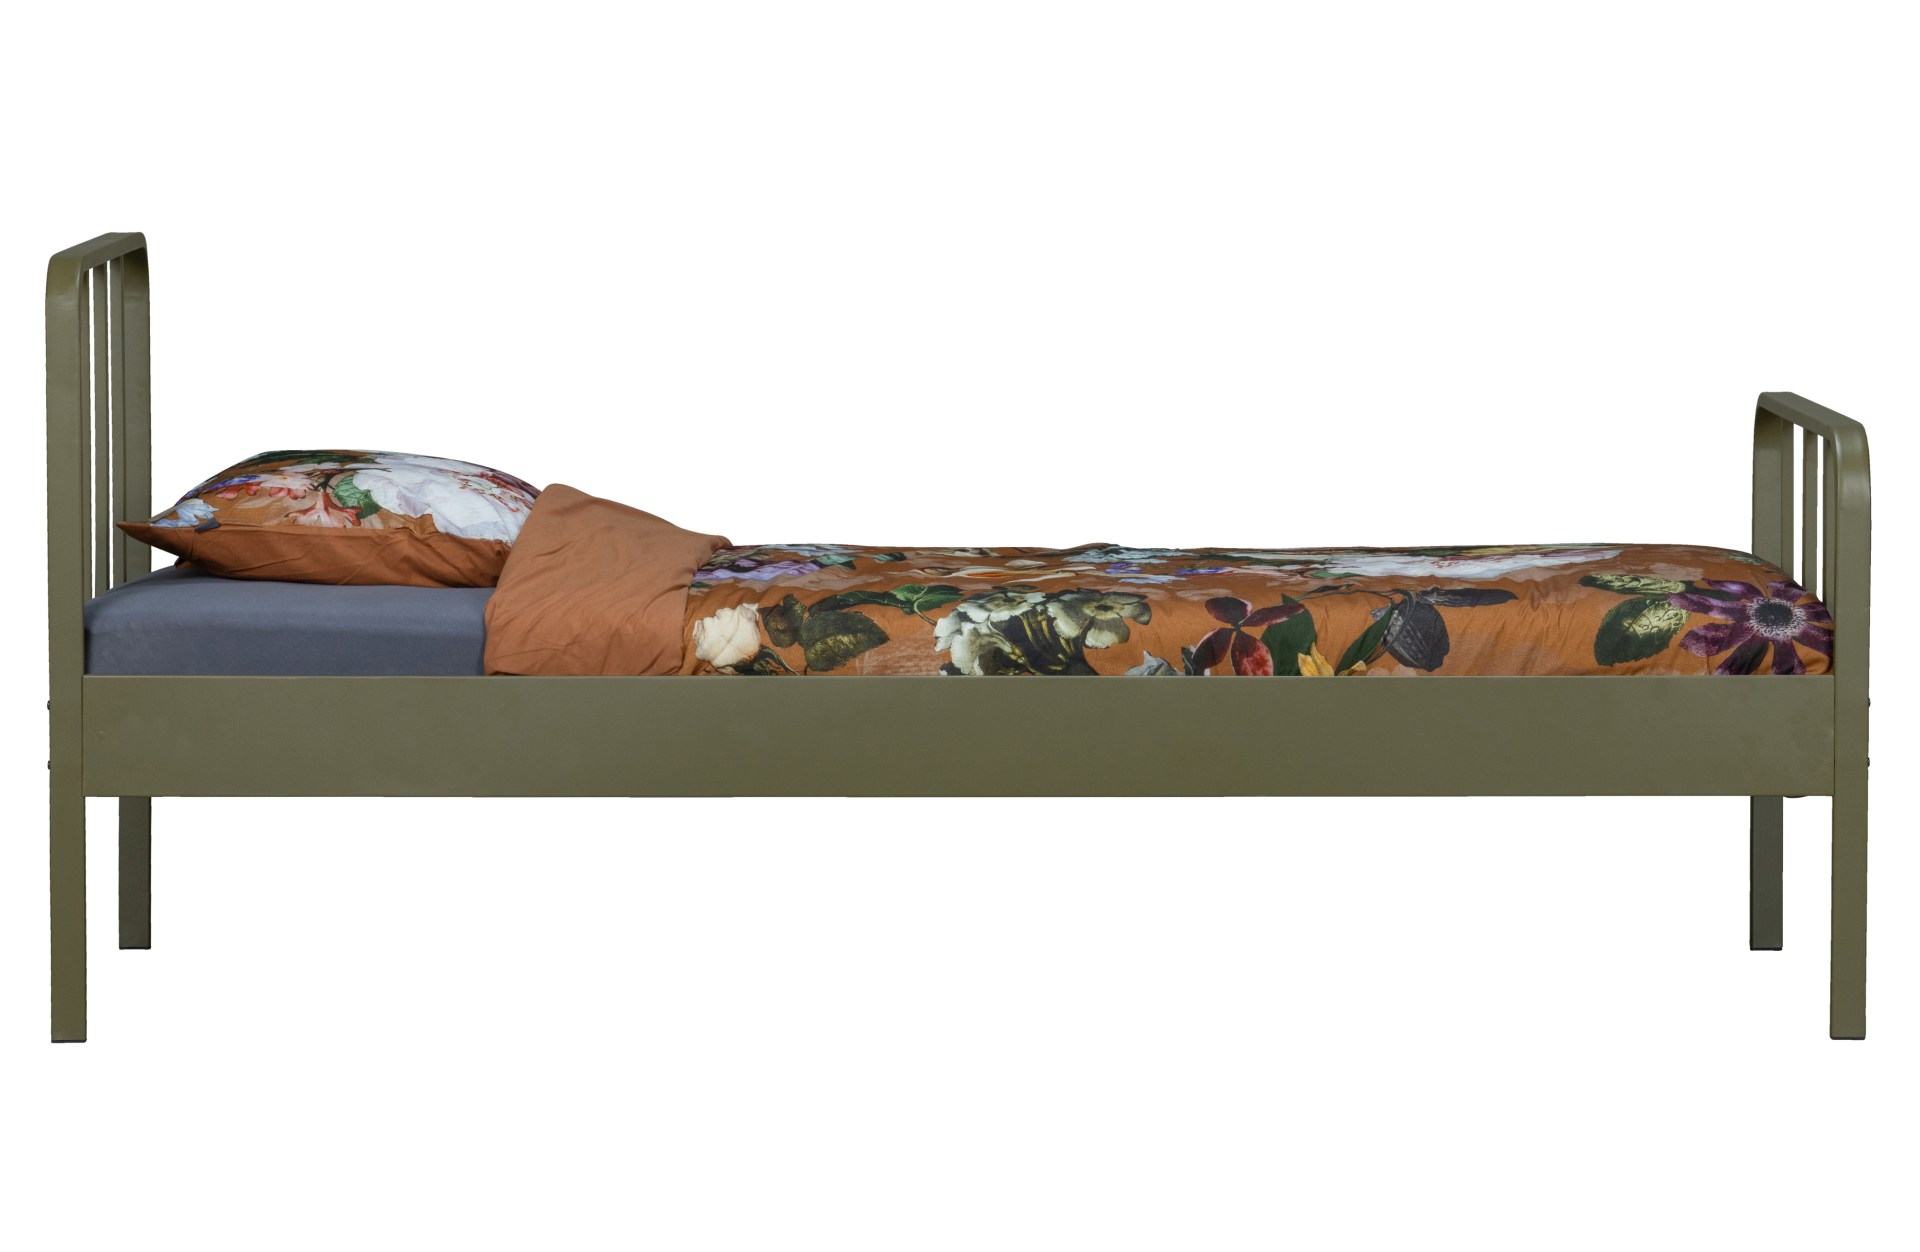 Das Bettgestell Mees wurde aus Metall gefertigt. Das Lattenrost besitzt 16 Stäbe und das Bett ist für eine Matratzengröße von 90x200 cm geeignet. Das Bettgestell ist in einem Army Farbton.